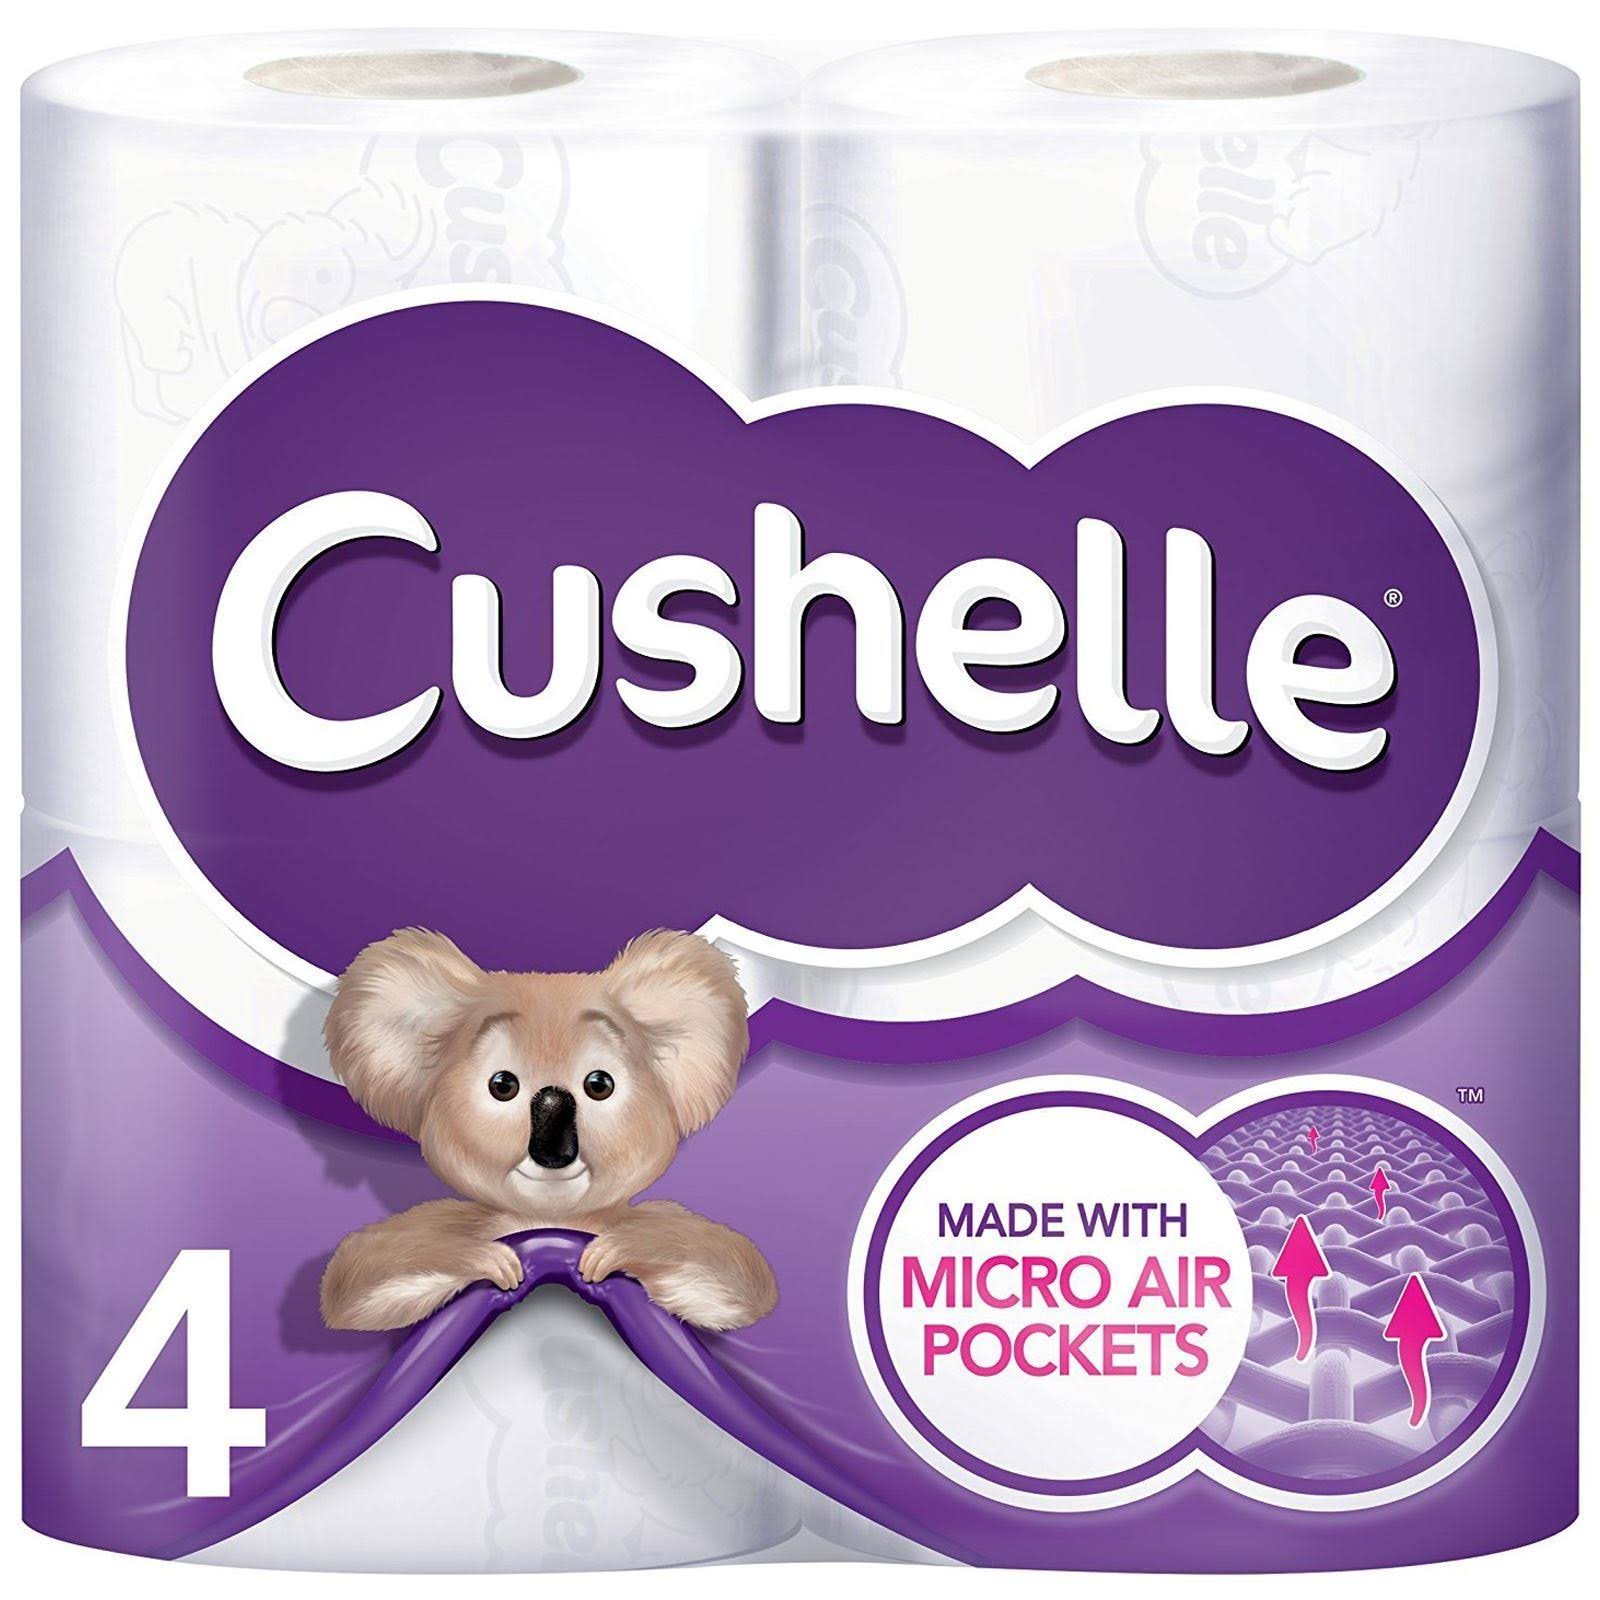 Cushelle Toilet Paper Tissue - White, 24 Rolls, XX-Large